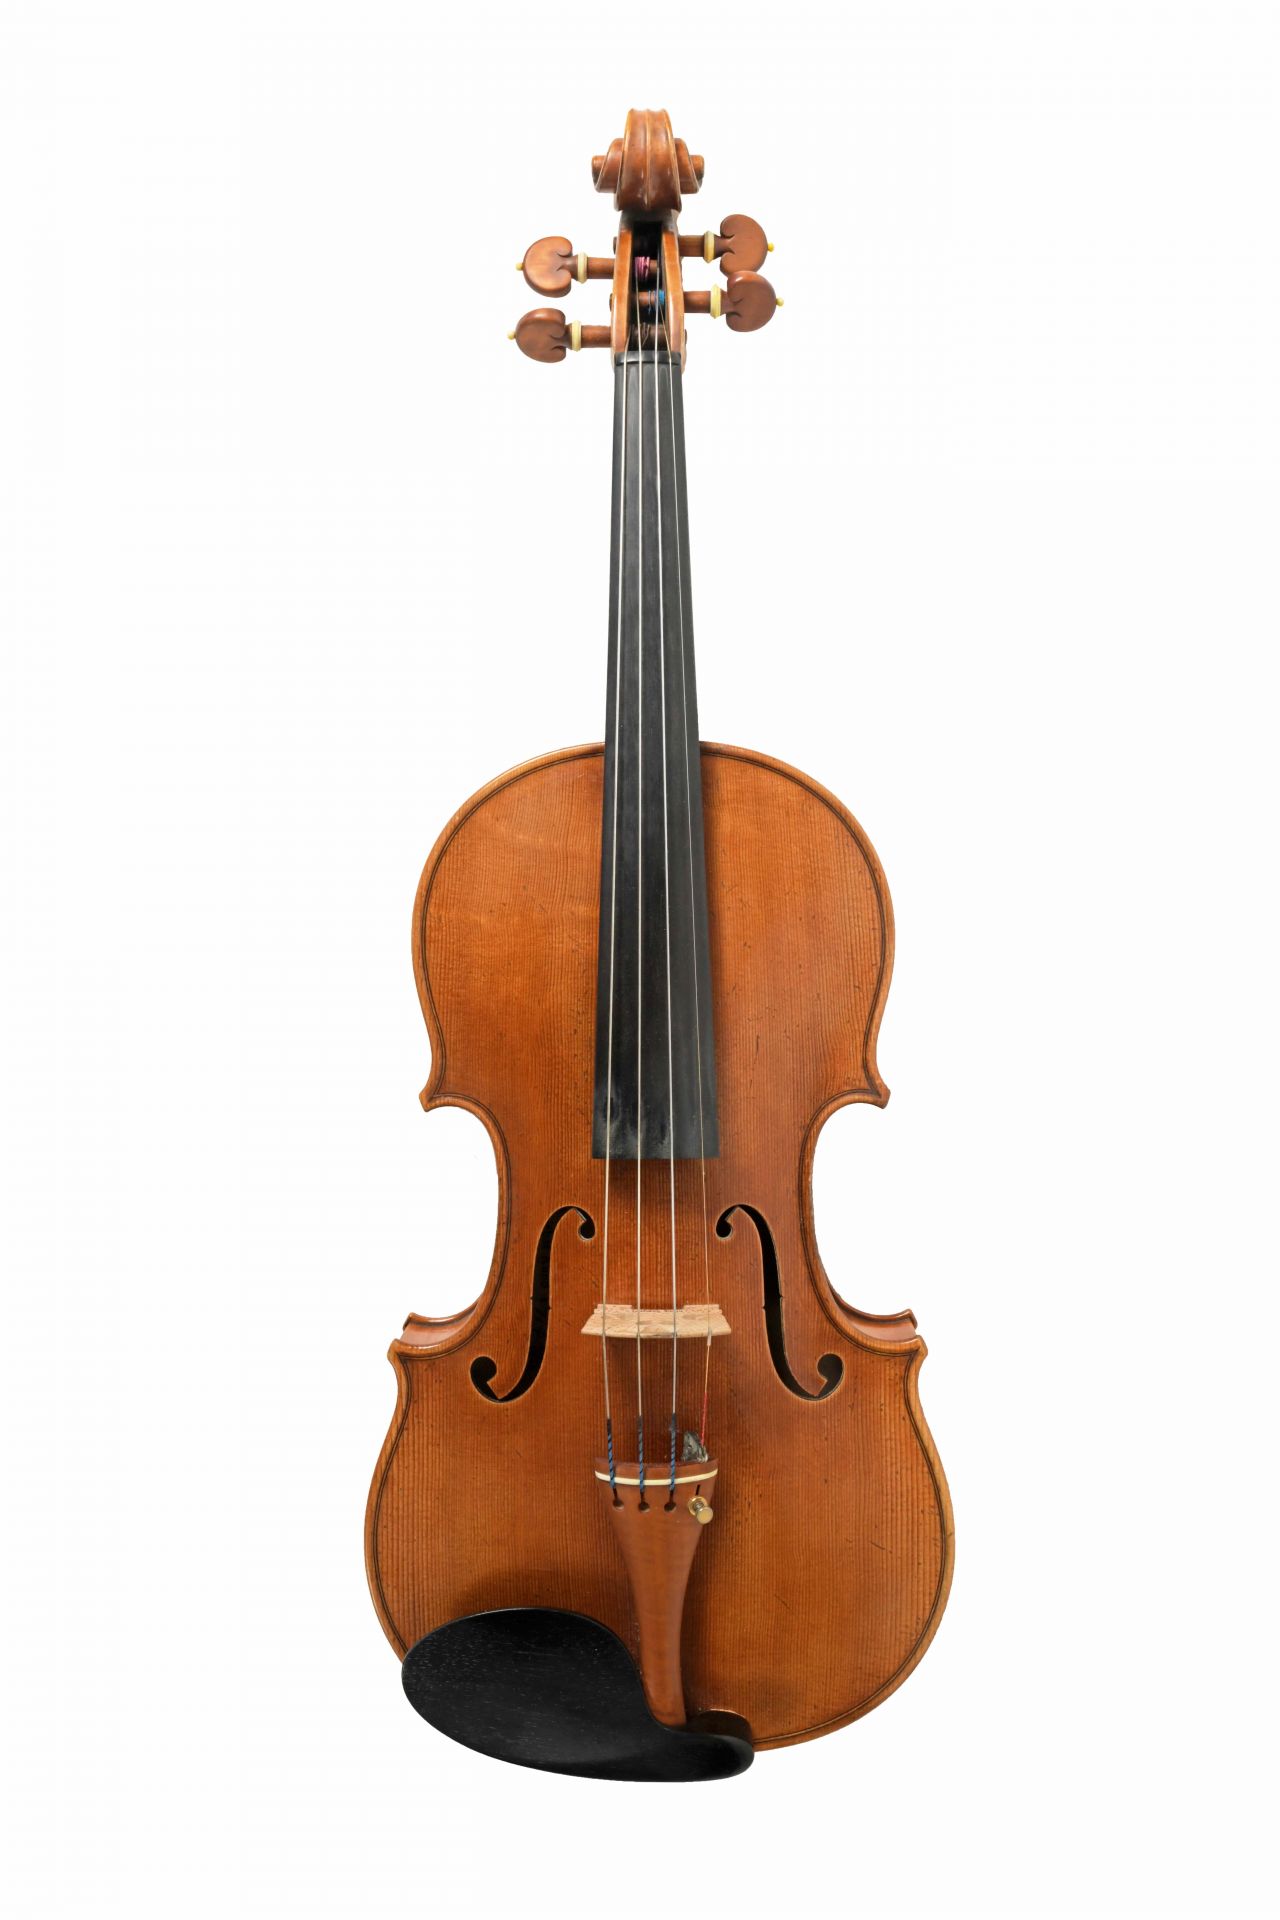 Rombach violin